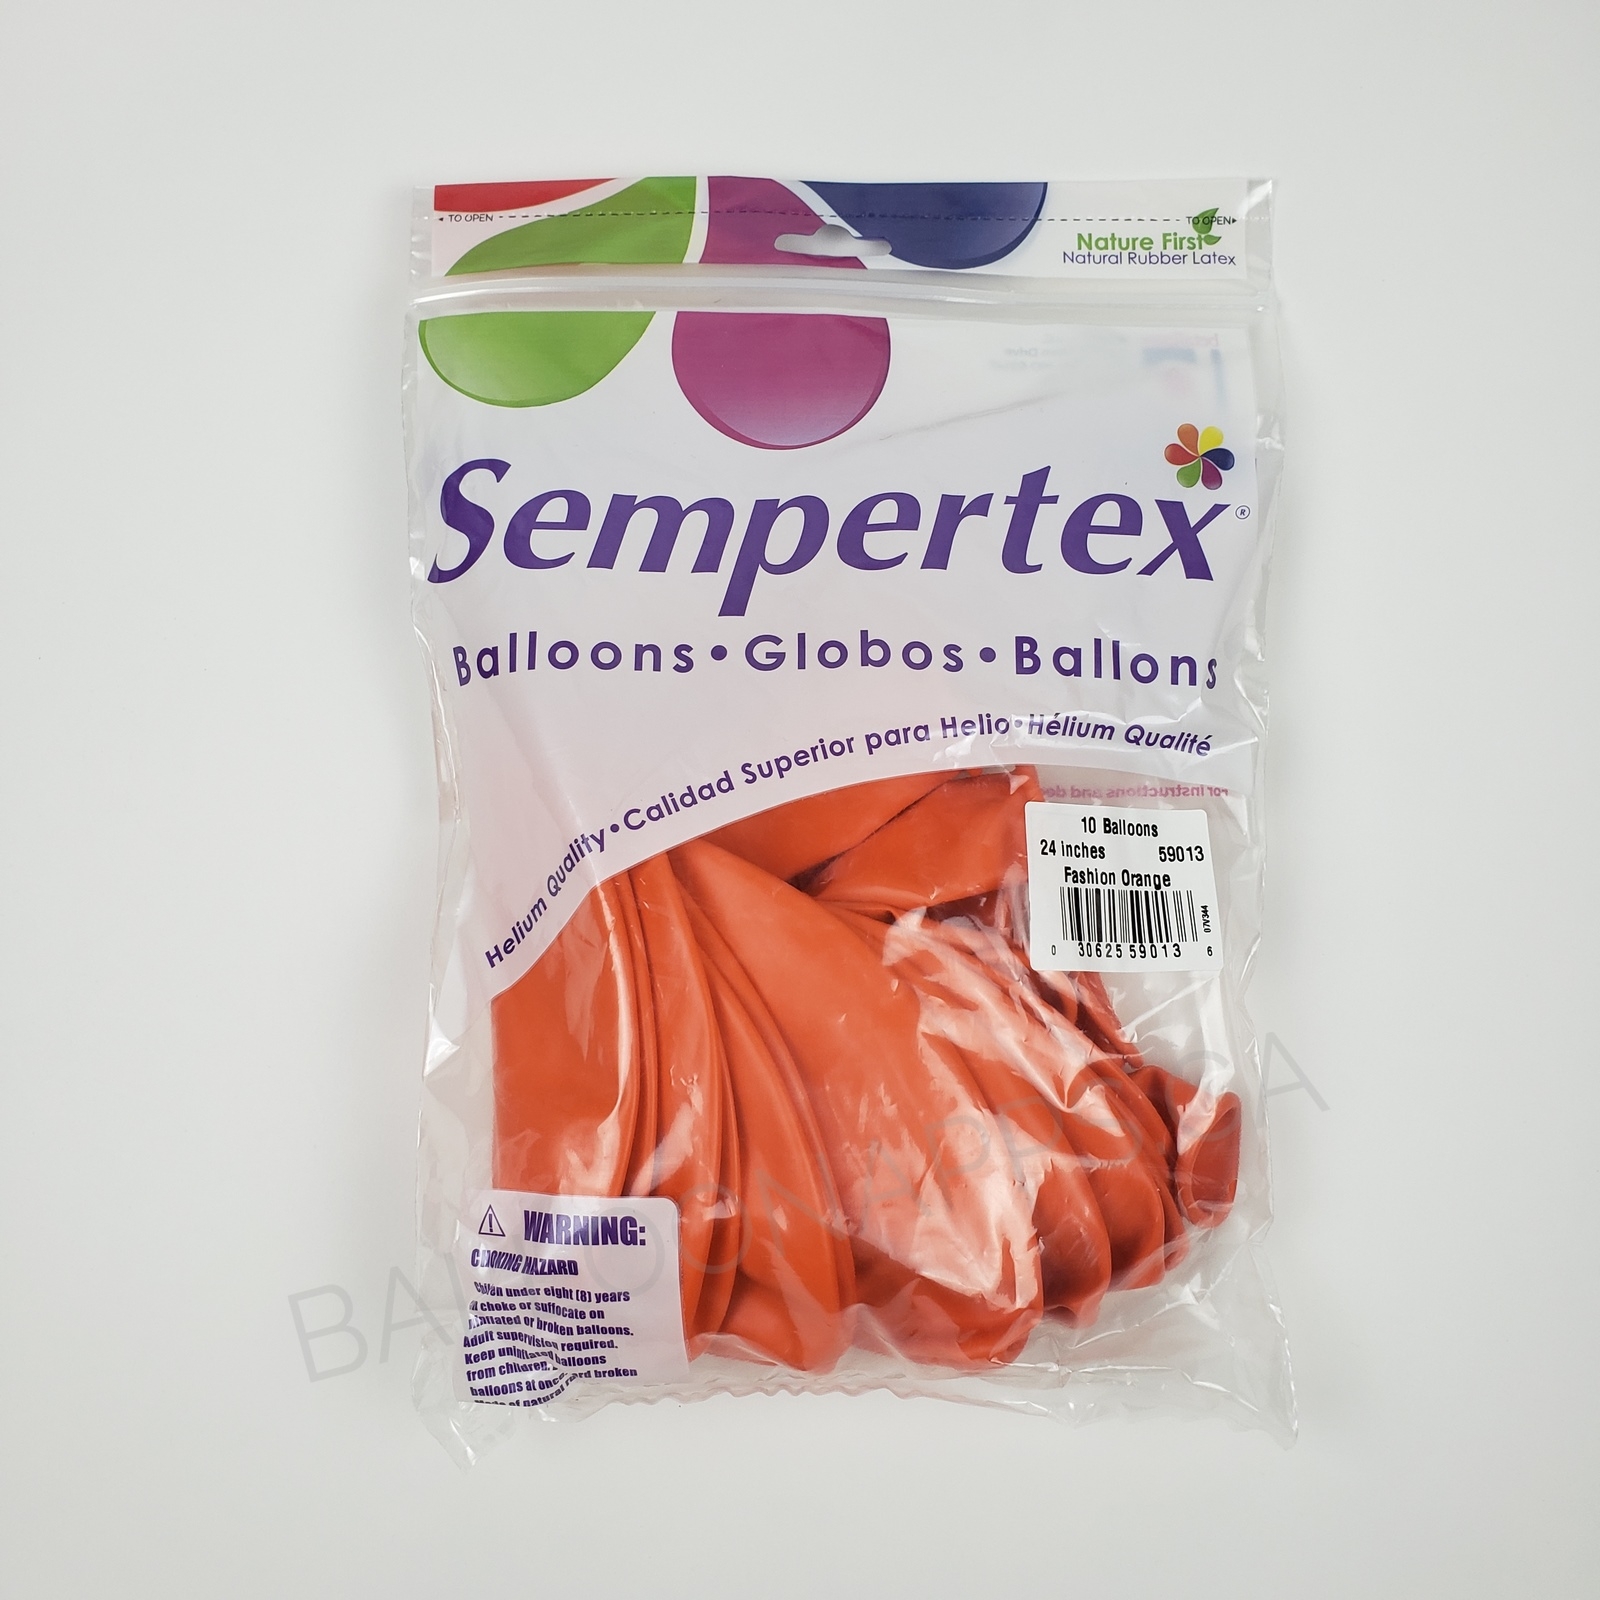 Sempertex (1) 24